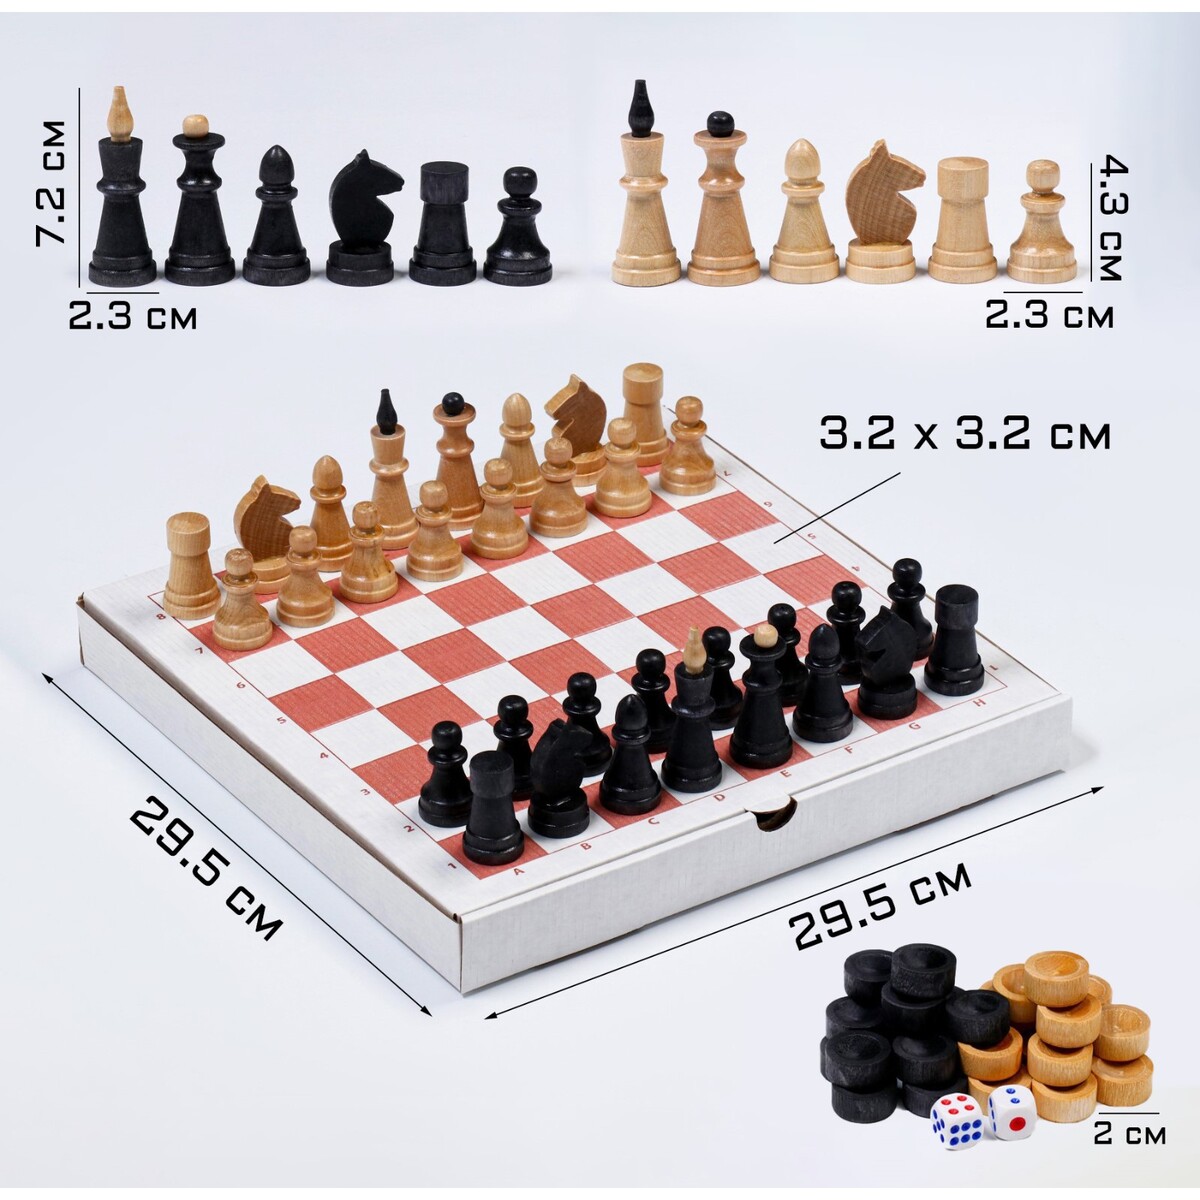 Настольная игра 3 в 1: шахматы, шашки, нарды, деревянные фигуры, доска 29.5 х 29.5 см нарды стая деревянная доска 50 х 50 см с полем для игры в шашки